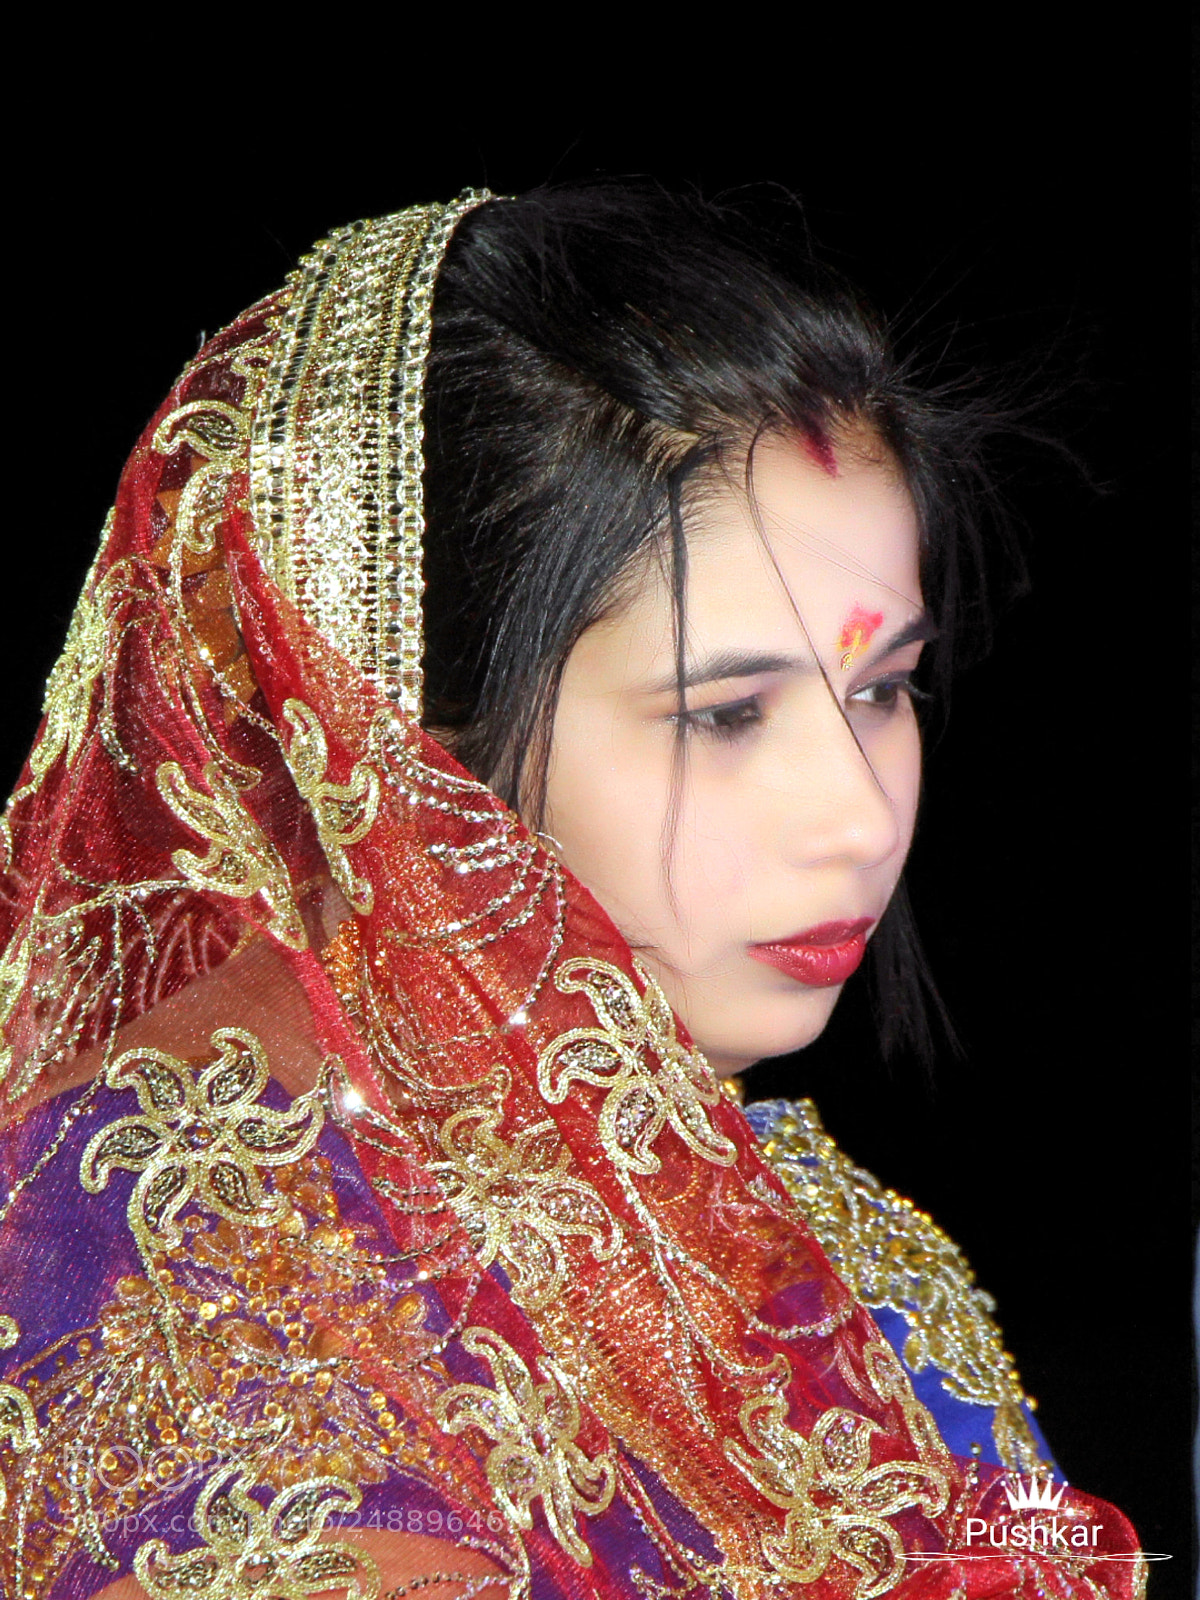 Canon EOS 1200D (EOS Rebel T5 / EOS Kiss X70 / EOS Hi) sample photo. Indian bride photography